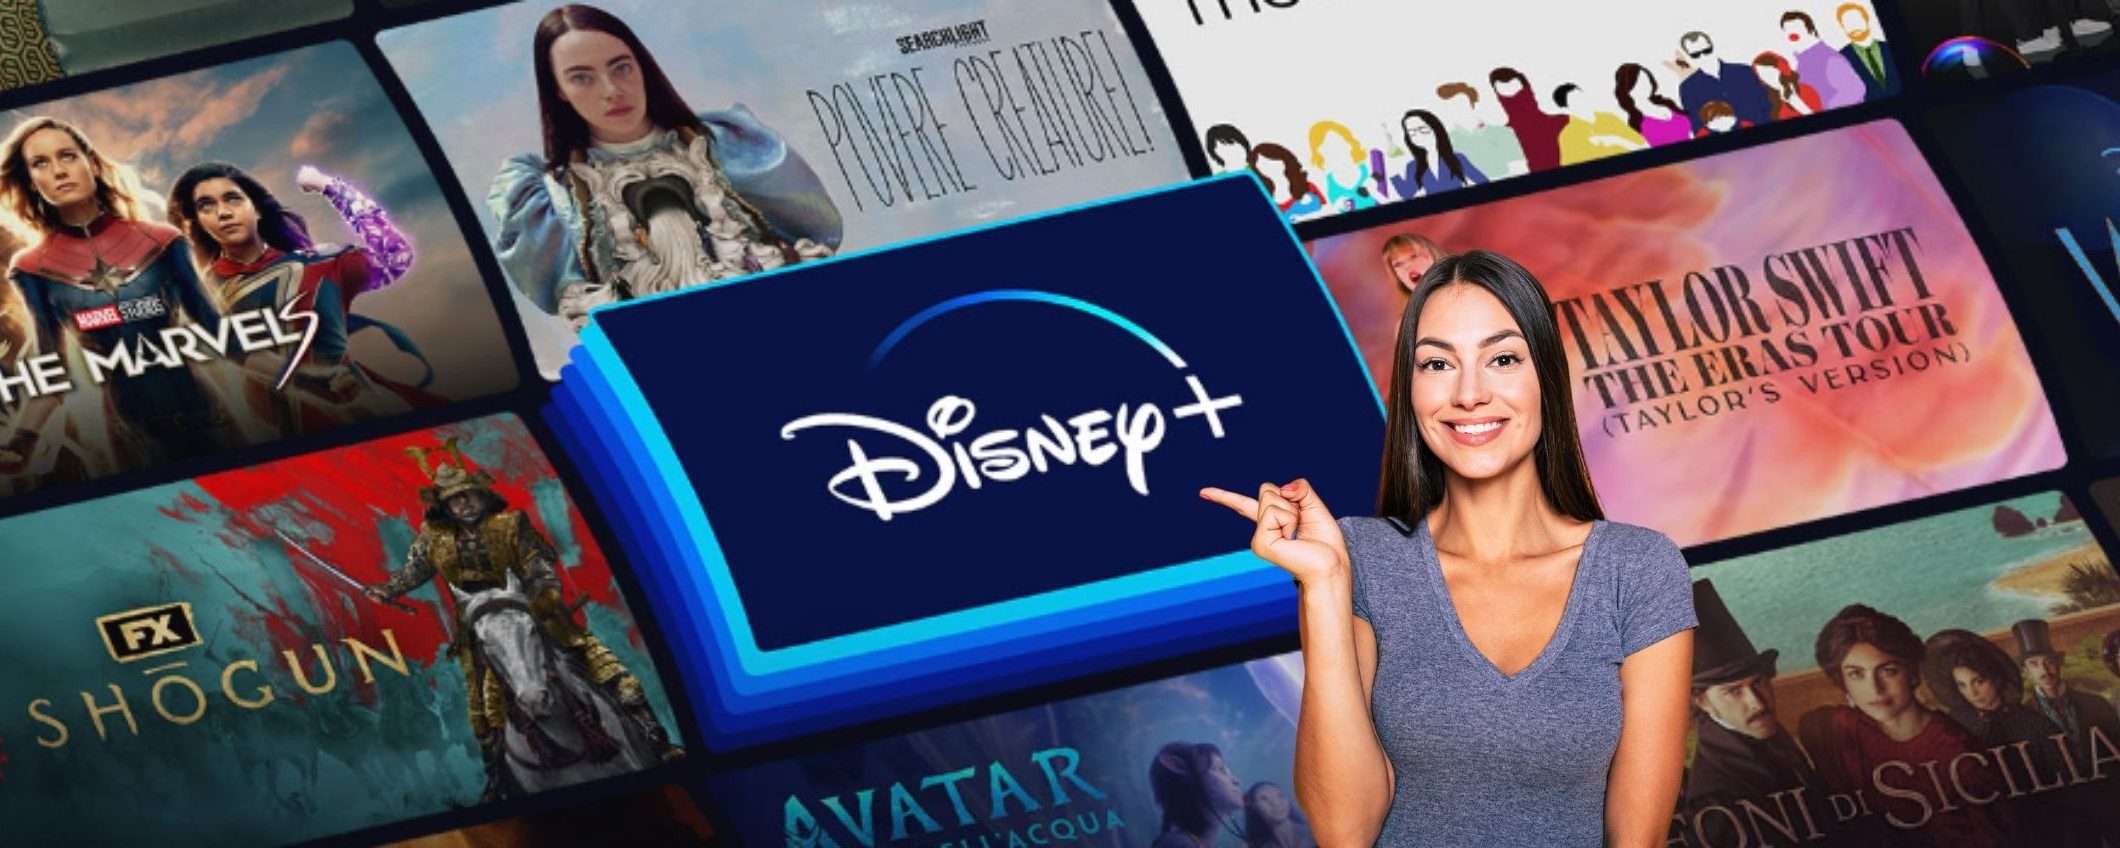 Disney+ ti aspetta: abbonamento da 5,99€ al mese